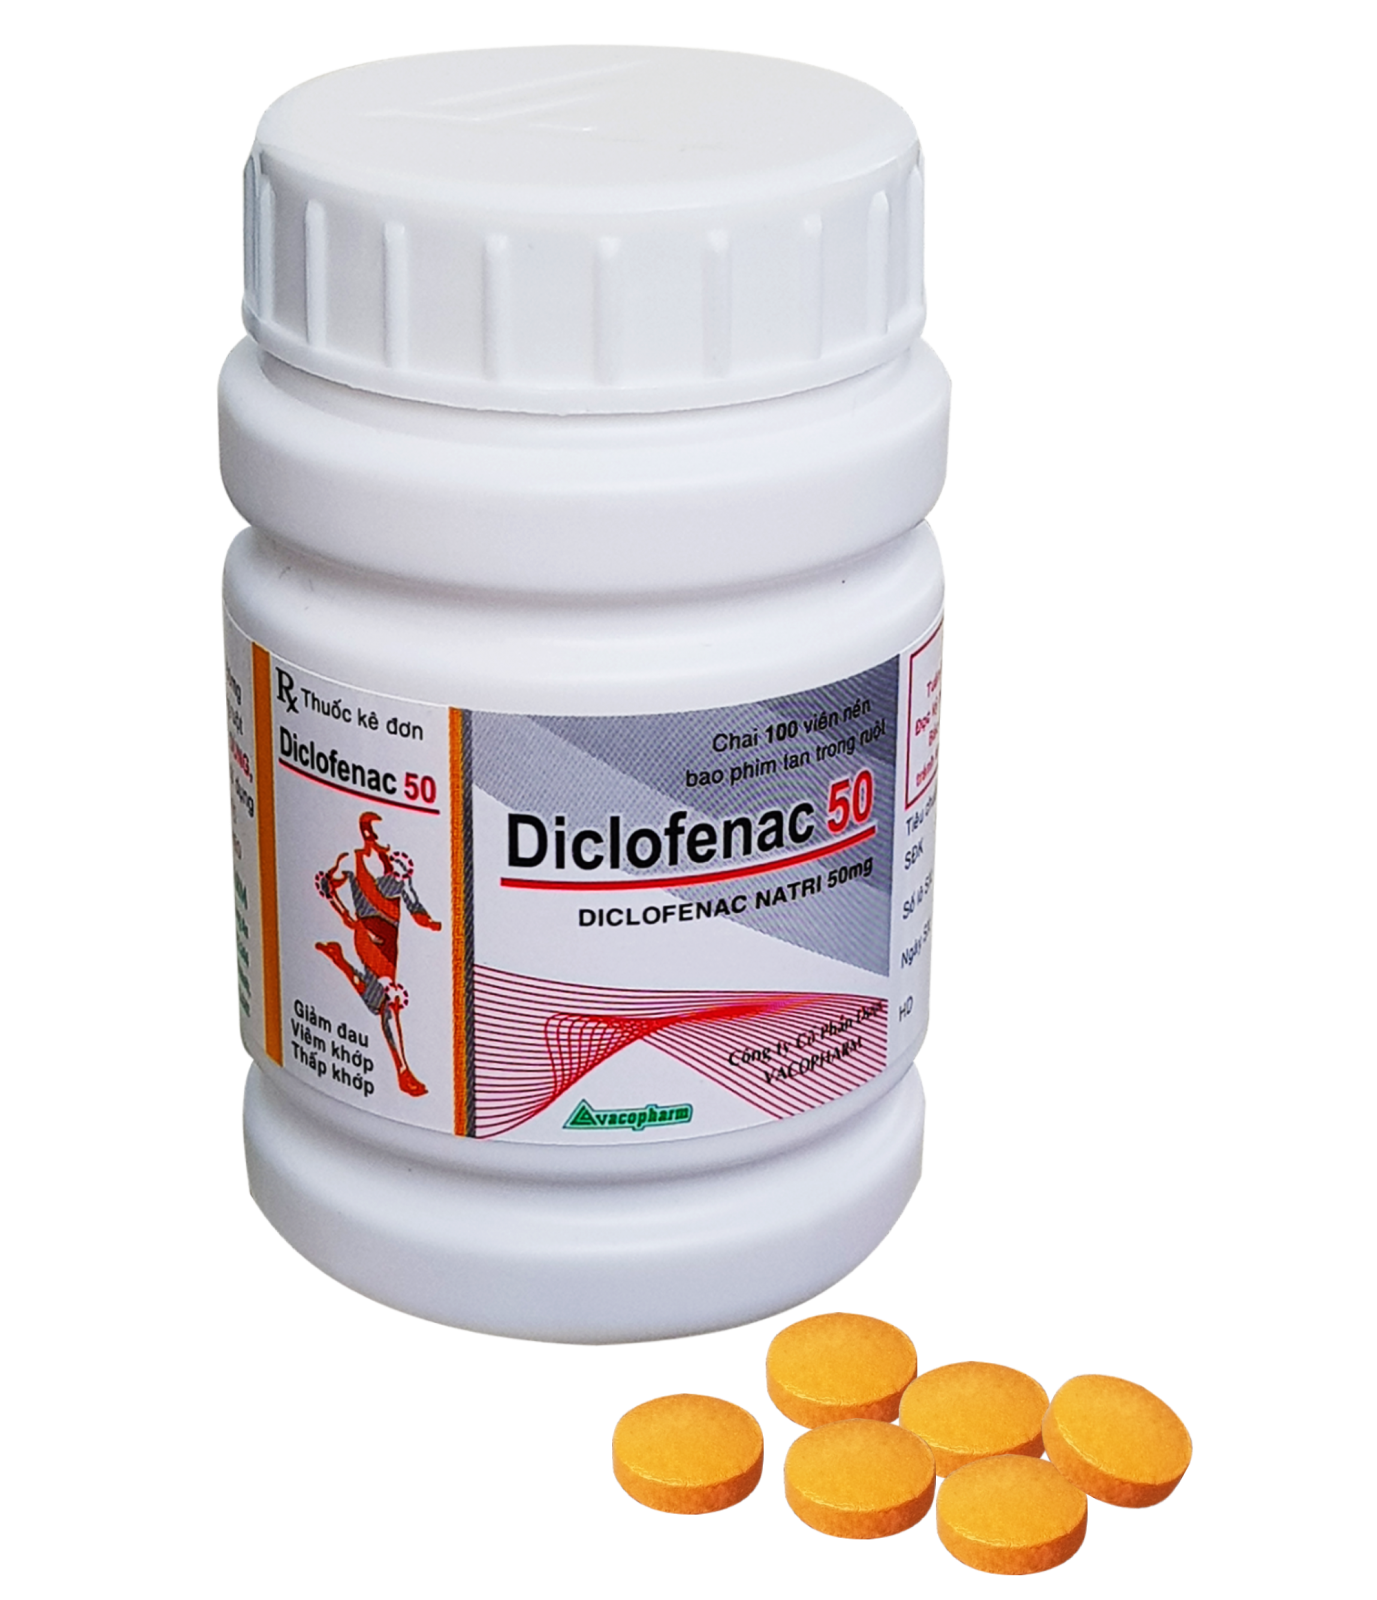 Cách sử dụng và liều lượng của thuốc diclofenac 50 như thế nào?